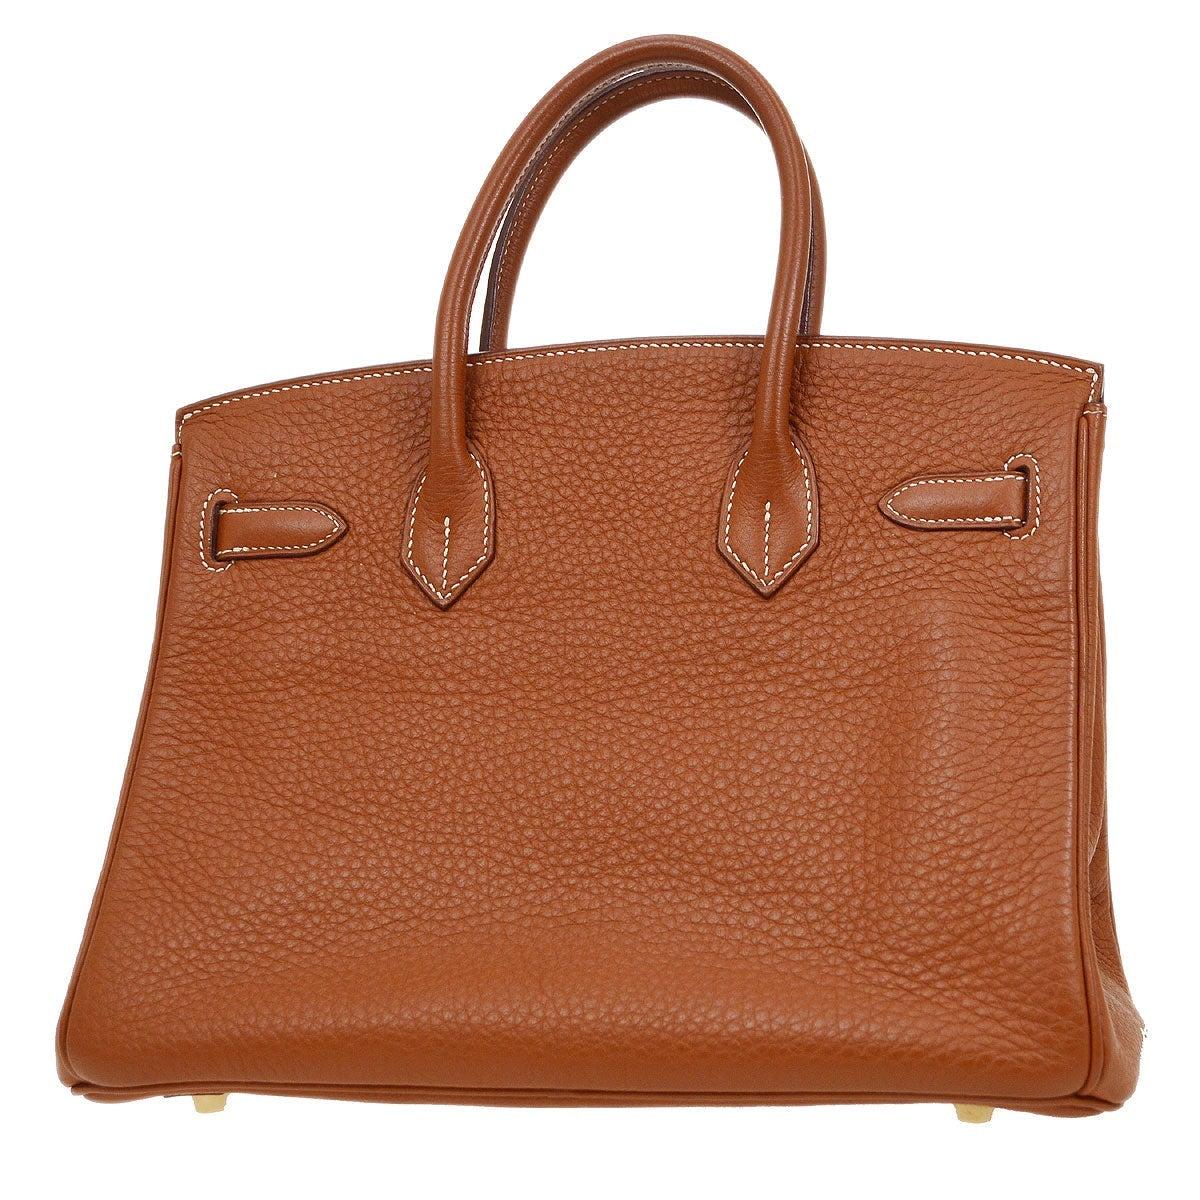 Women's HERMES Birkin 30 Cognac Tan Brown Leather Gold Top Handle Satchel Tote Bag